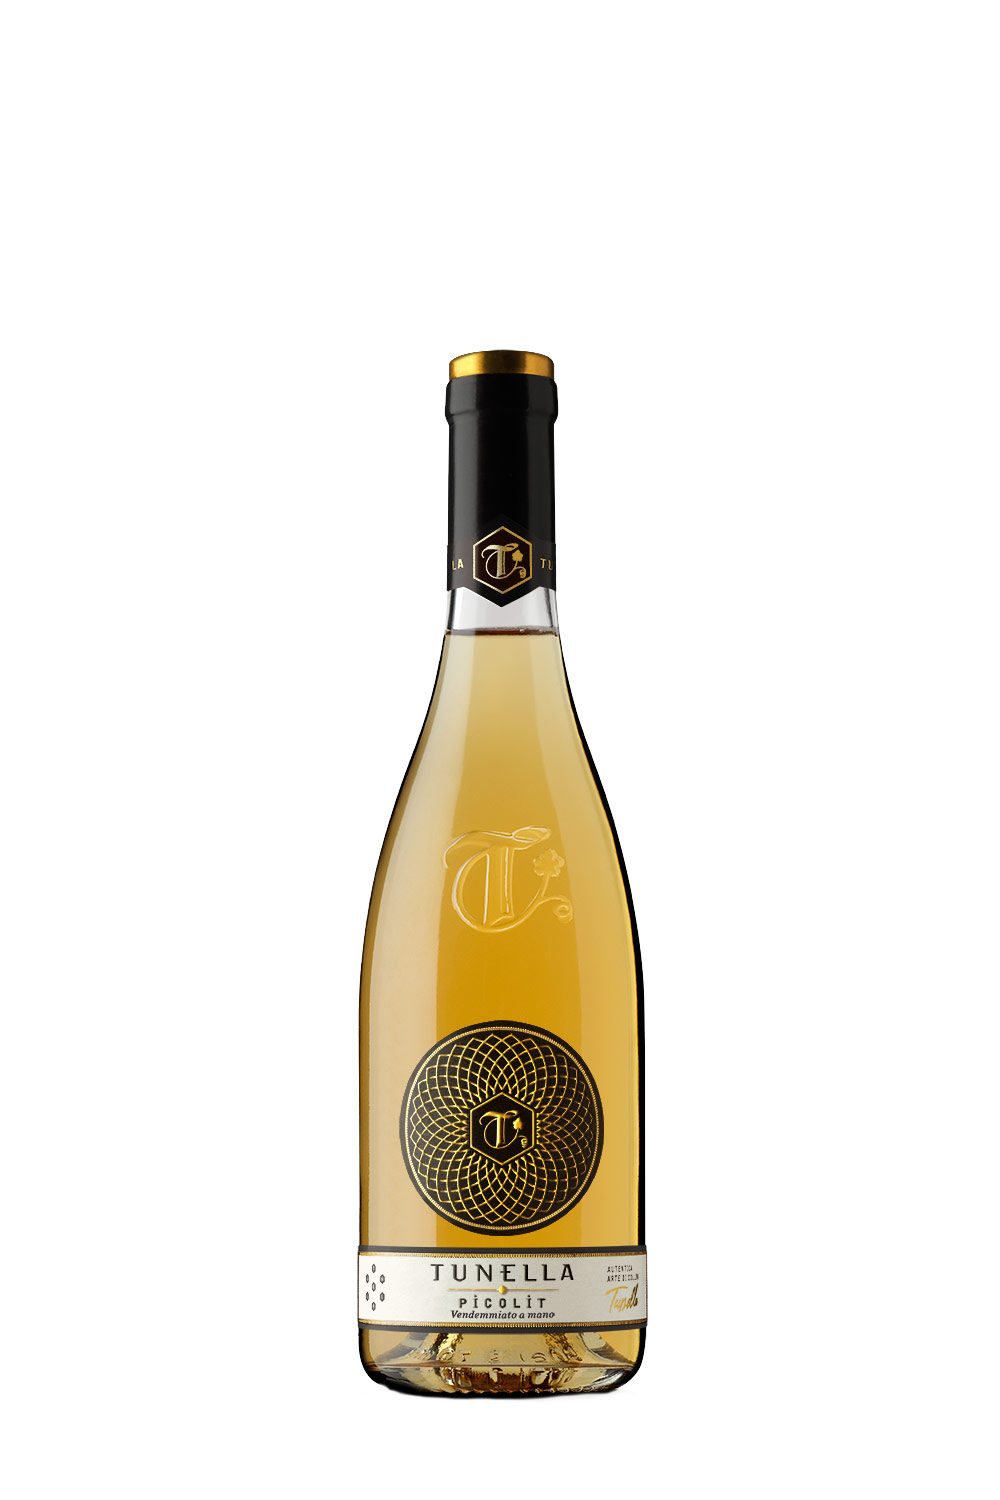 La Tunella Picolit DOCG 2021 (0,5 Liter) | Online kaufen bei Senti Vini -  Weine aus Italien